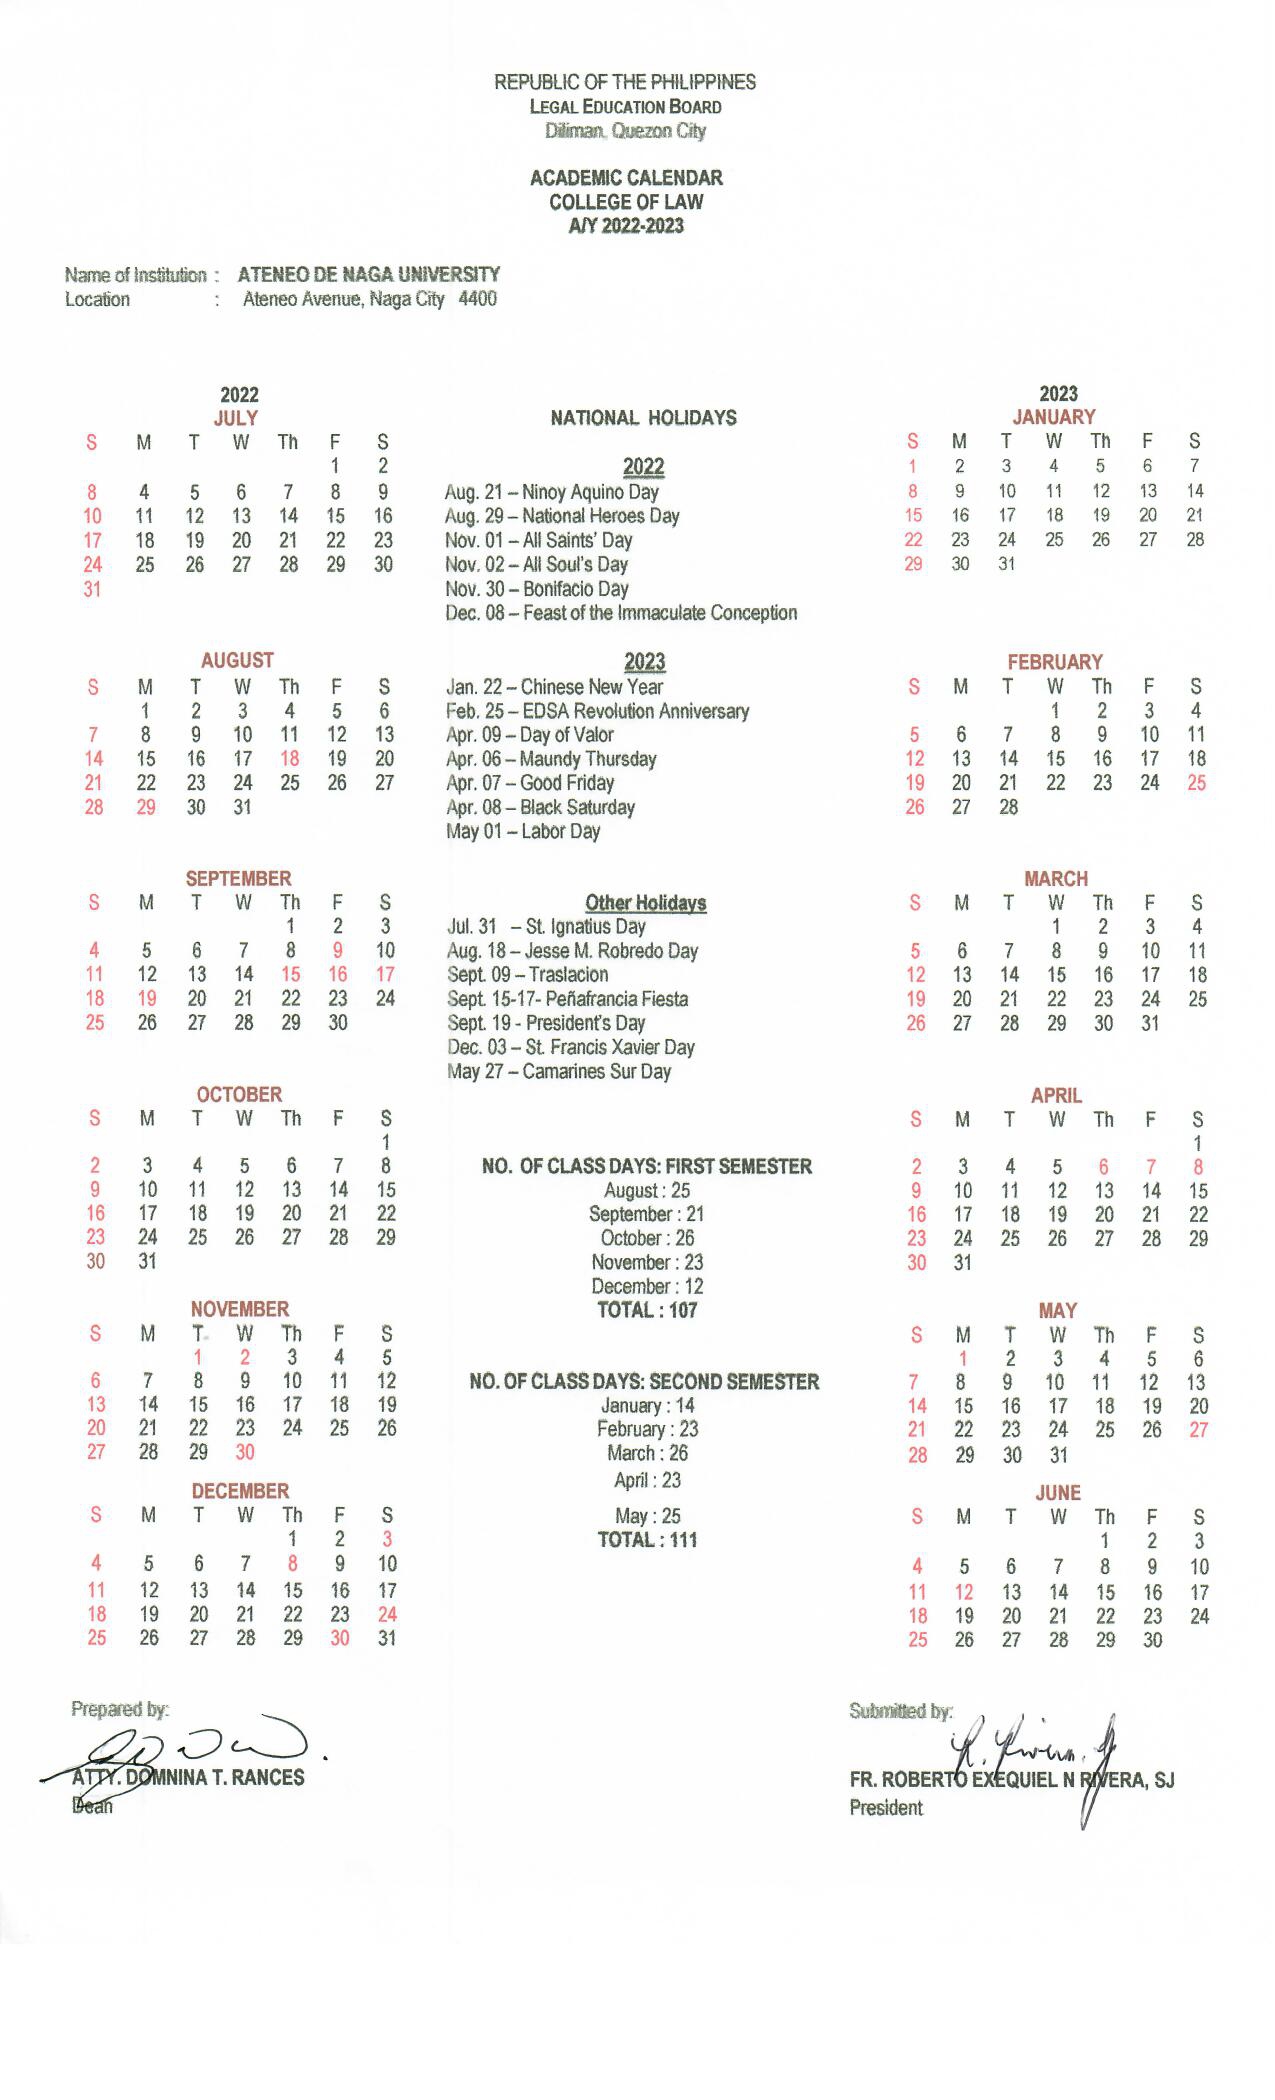 ADNU LAW: COL Academic Calendar AY2022-2023